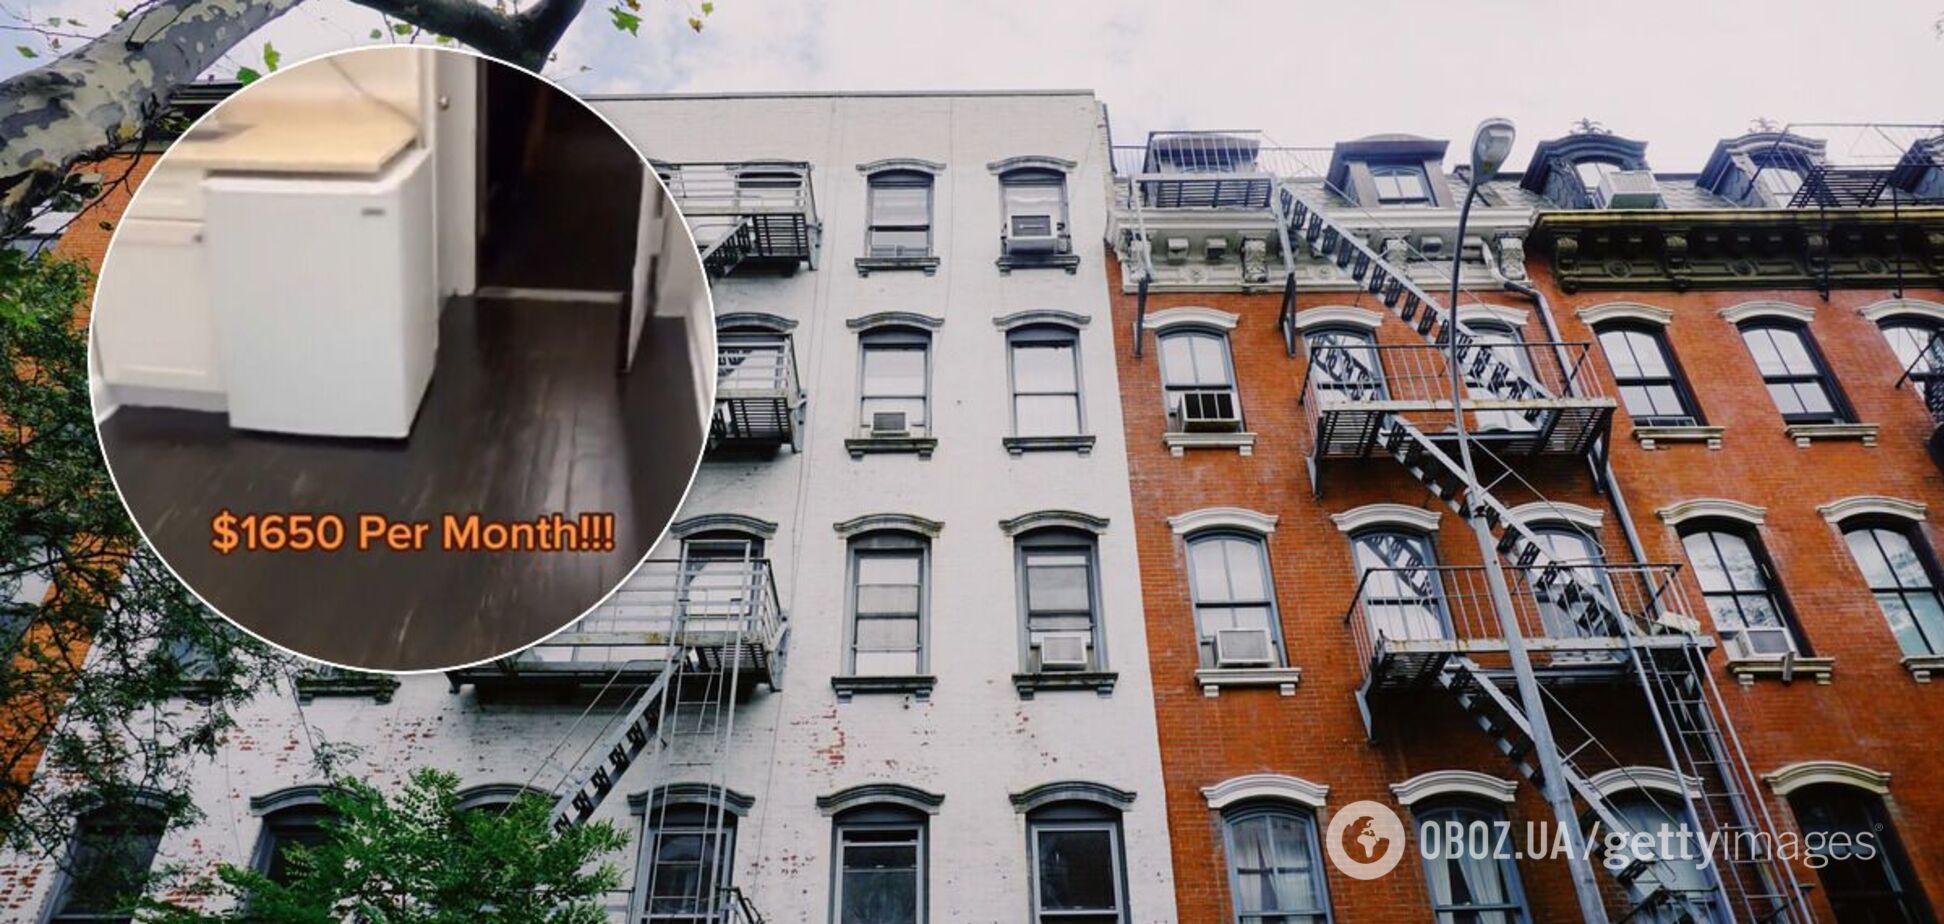 Риелтор показал 'худшую' квартиру в мире за $1,65 тыс. Видео